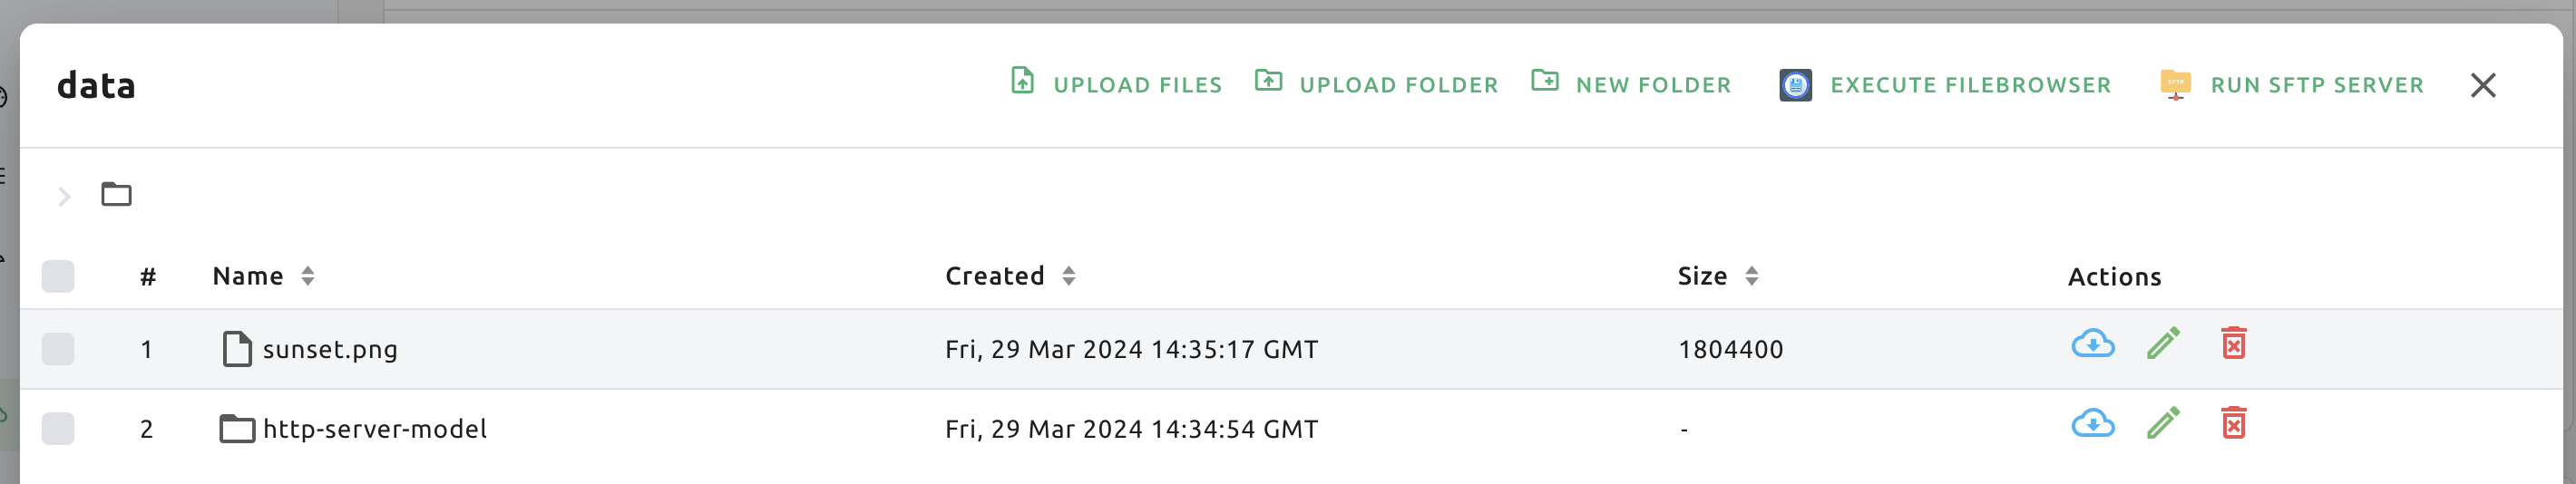 Folder explorer with FileBrowser